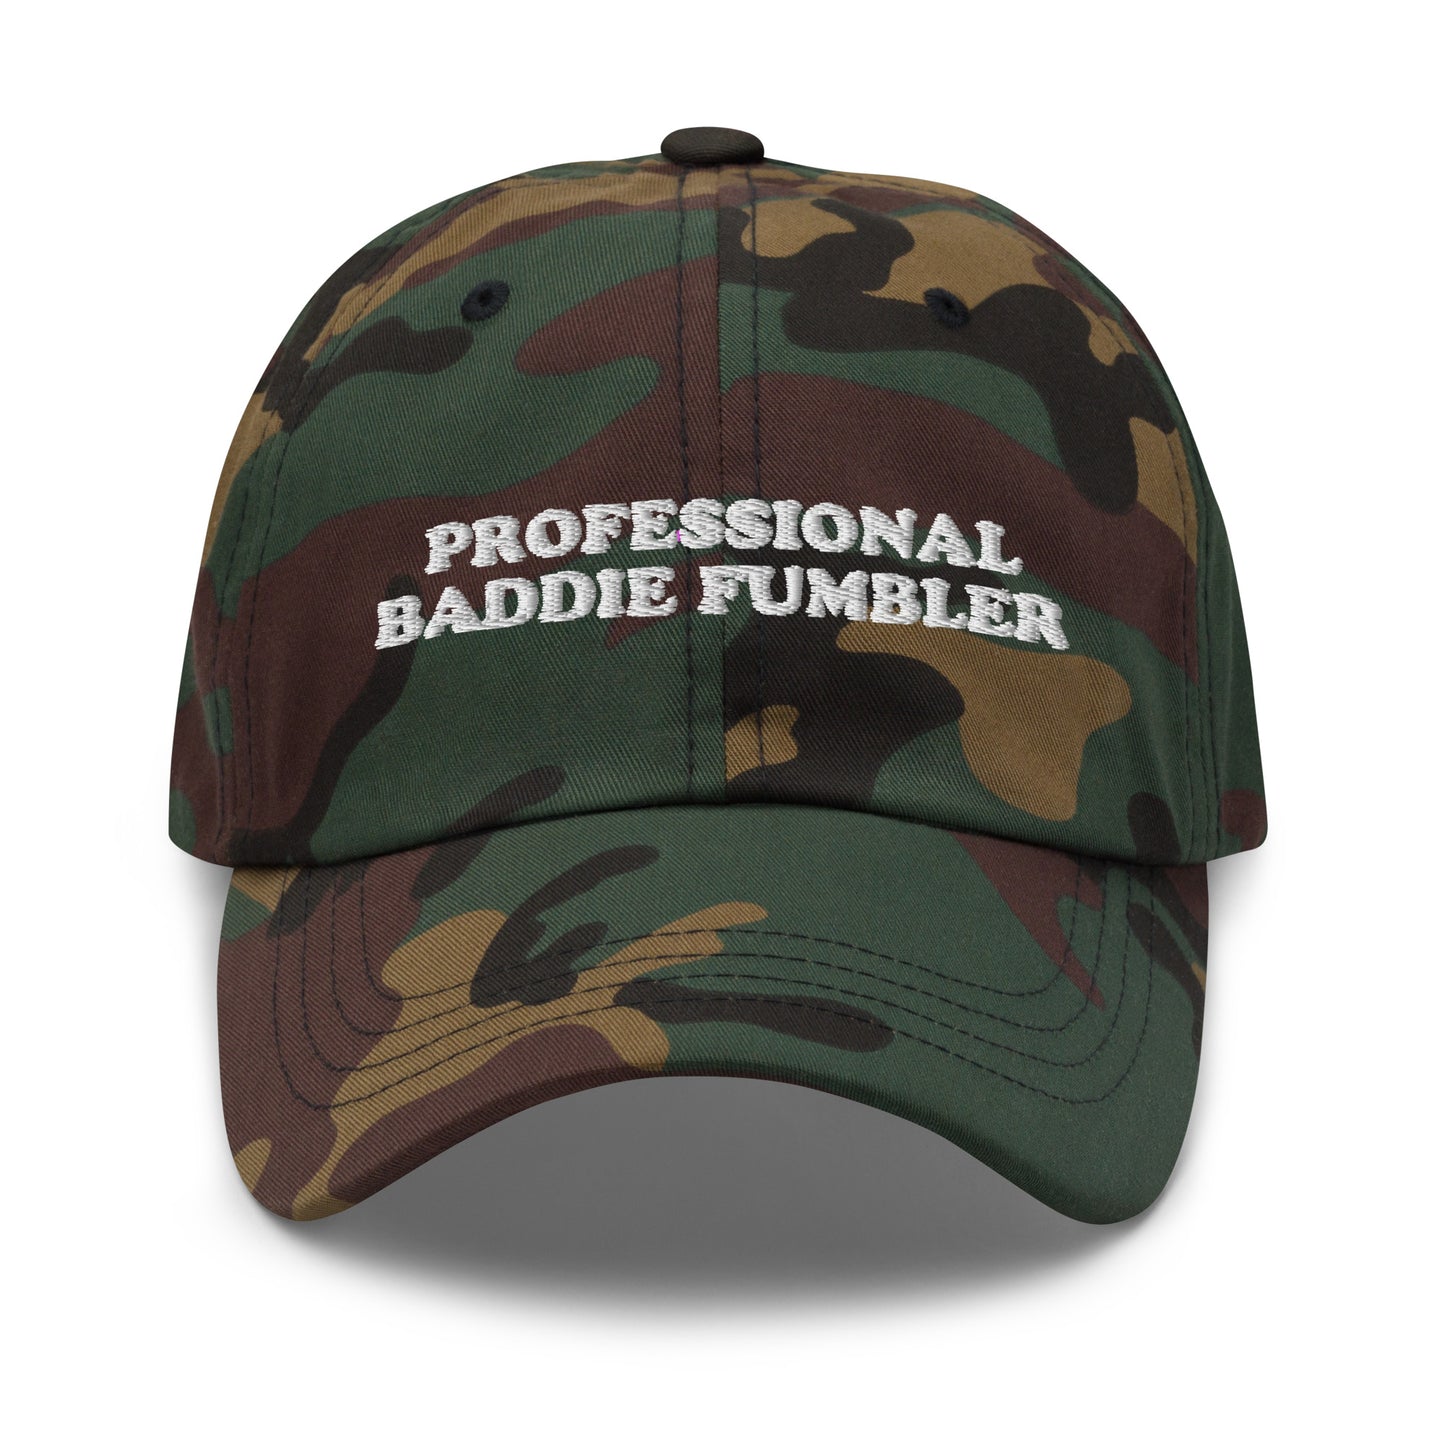 Professional Baddie Fumbler hat